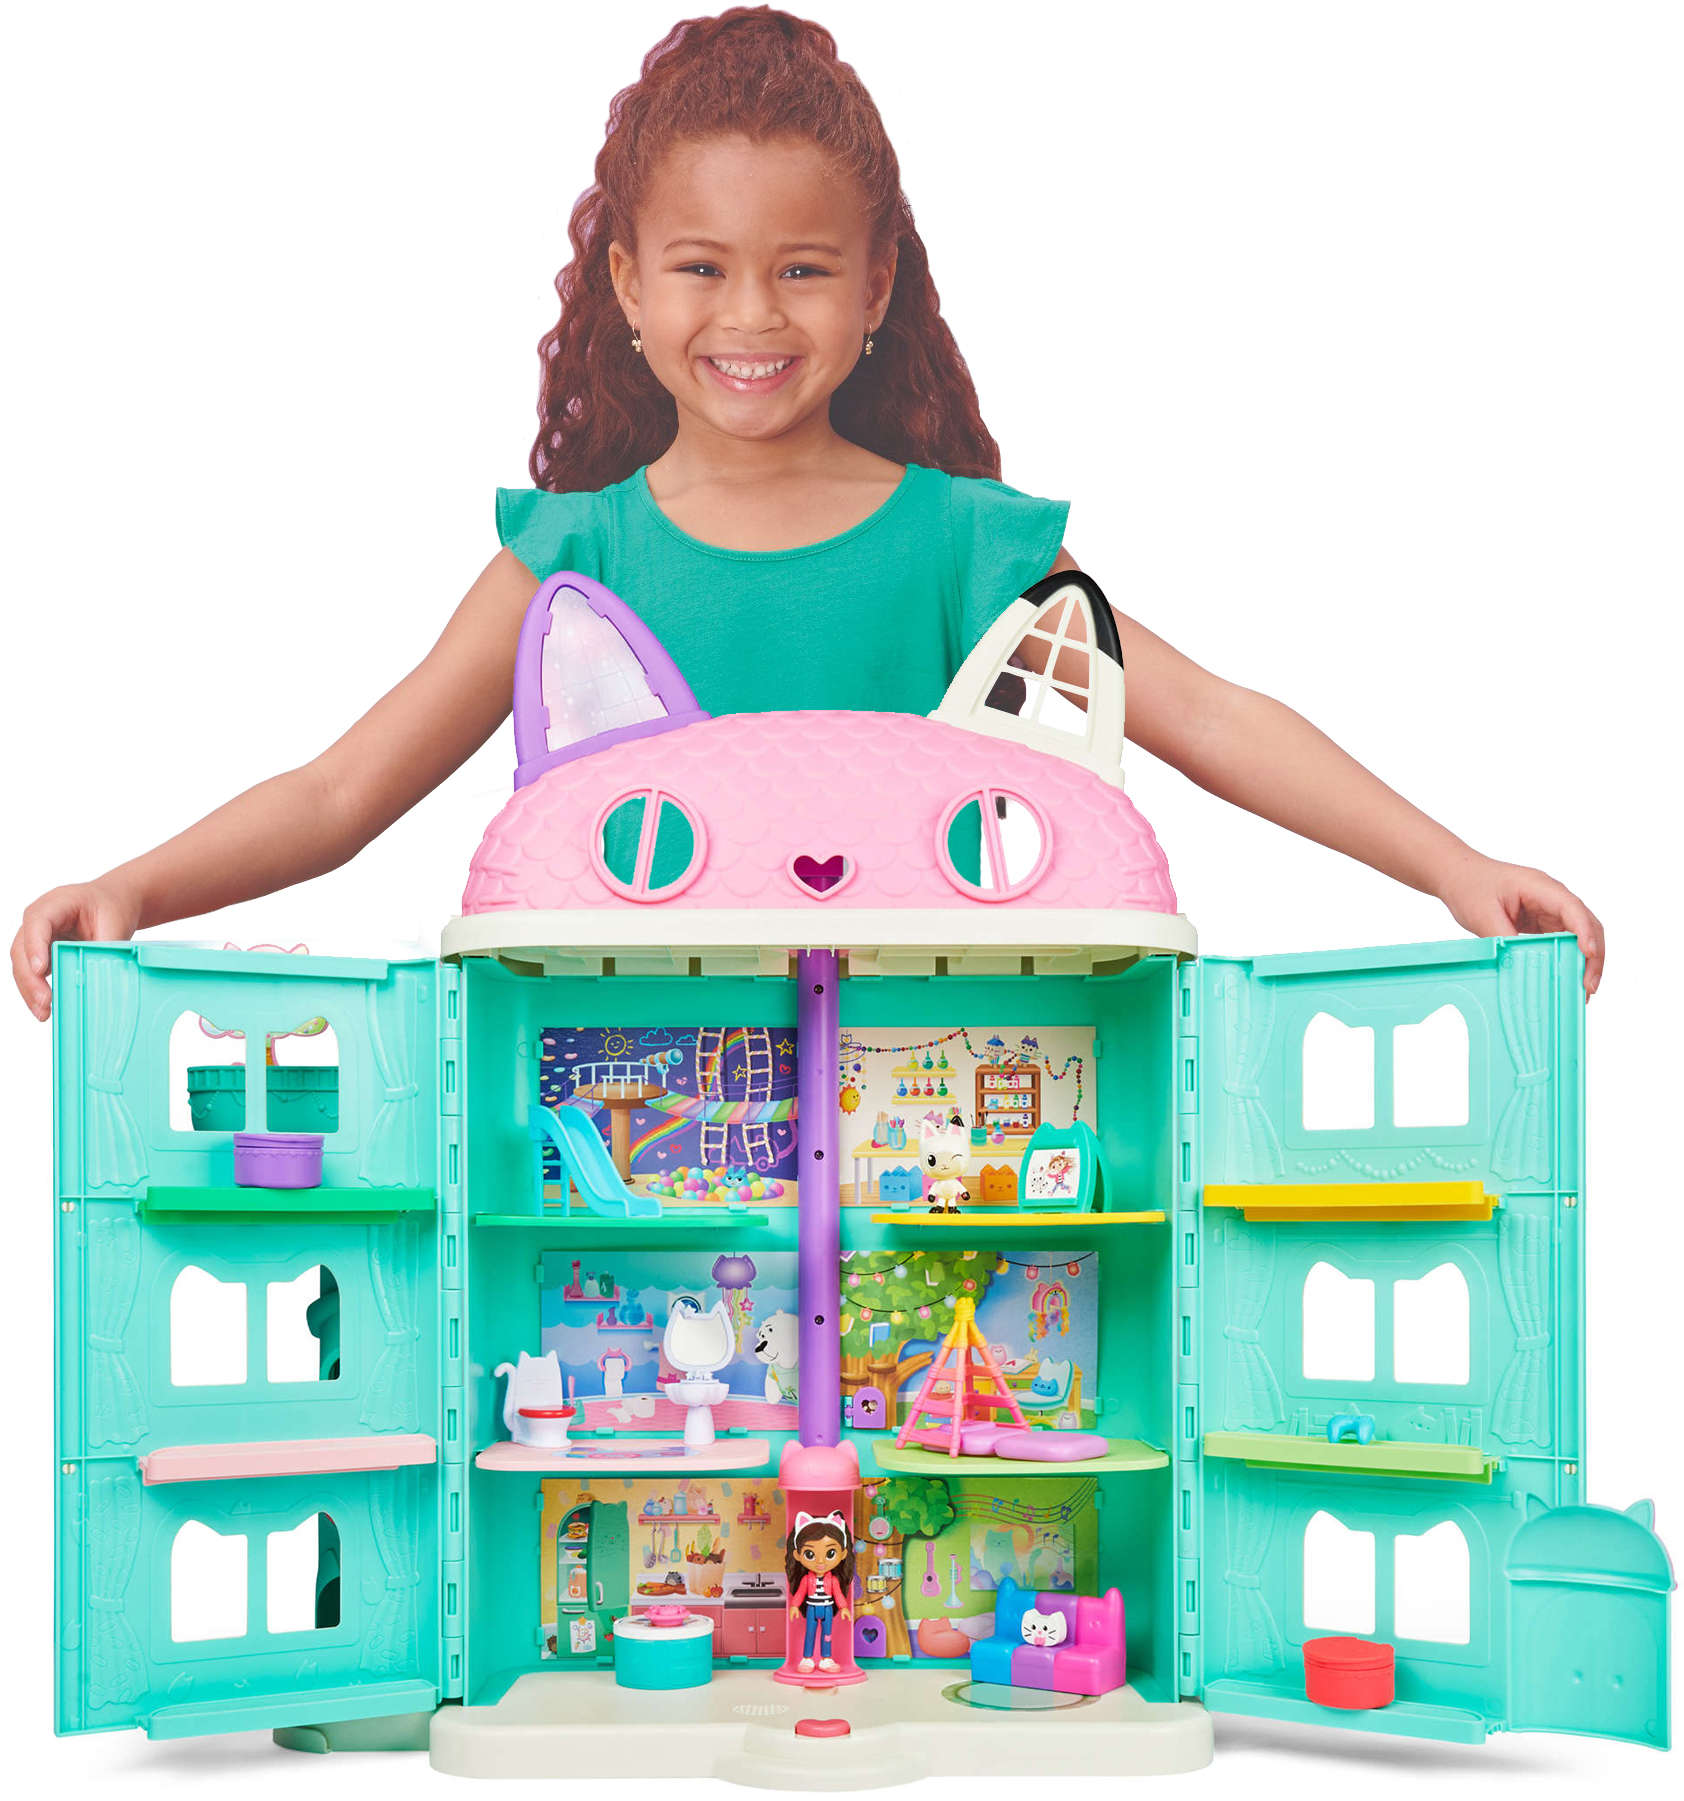 Koci Domek Gabi Interaktywny 60 cm wielki duy dom dla lalek + figurki Kiciu Pandu i Gabi Gabby's Purrfect Dollhouse DWIK